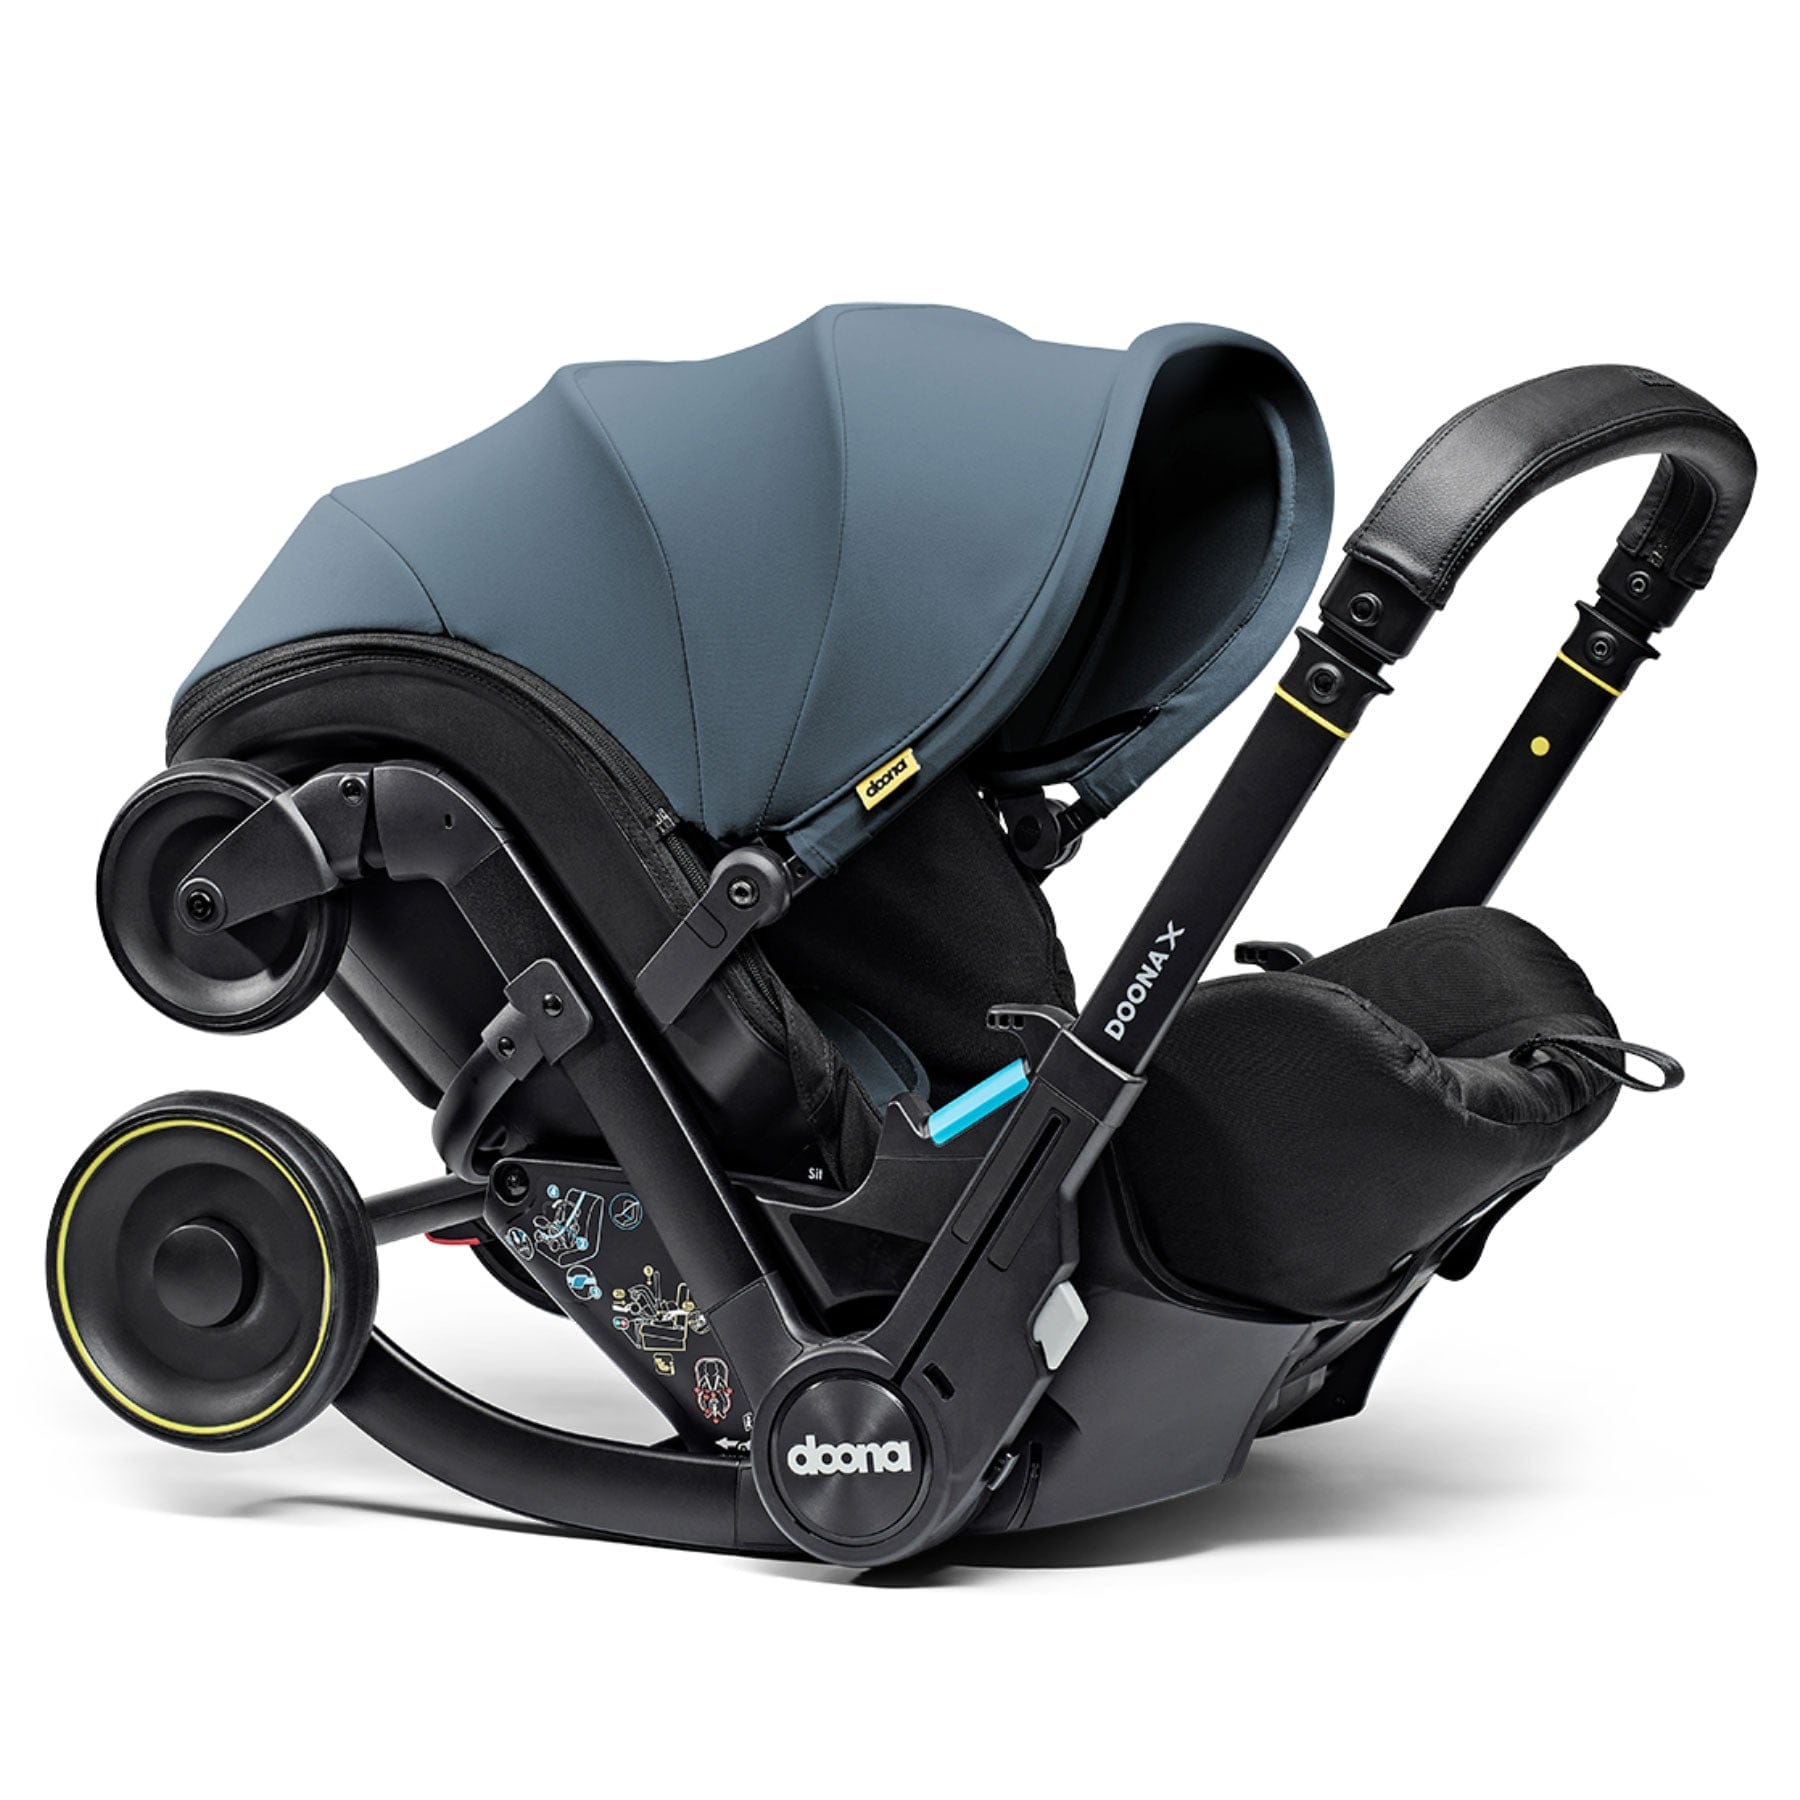 Doona baby car seats Doona X Infant Car Seat Stroller in Ocean Blue 14570-OCE-BLU